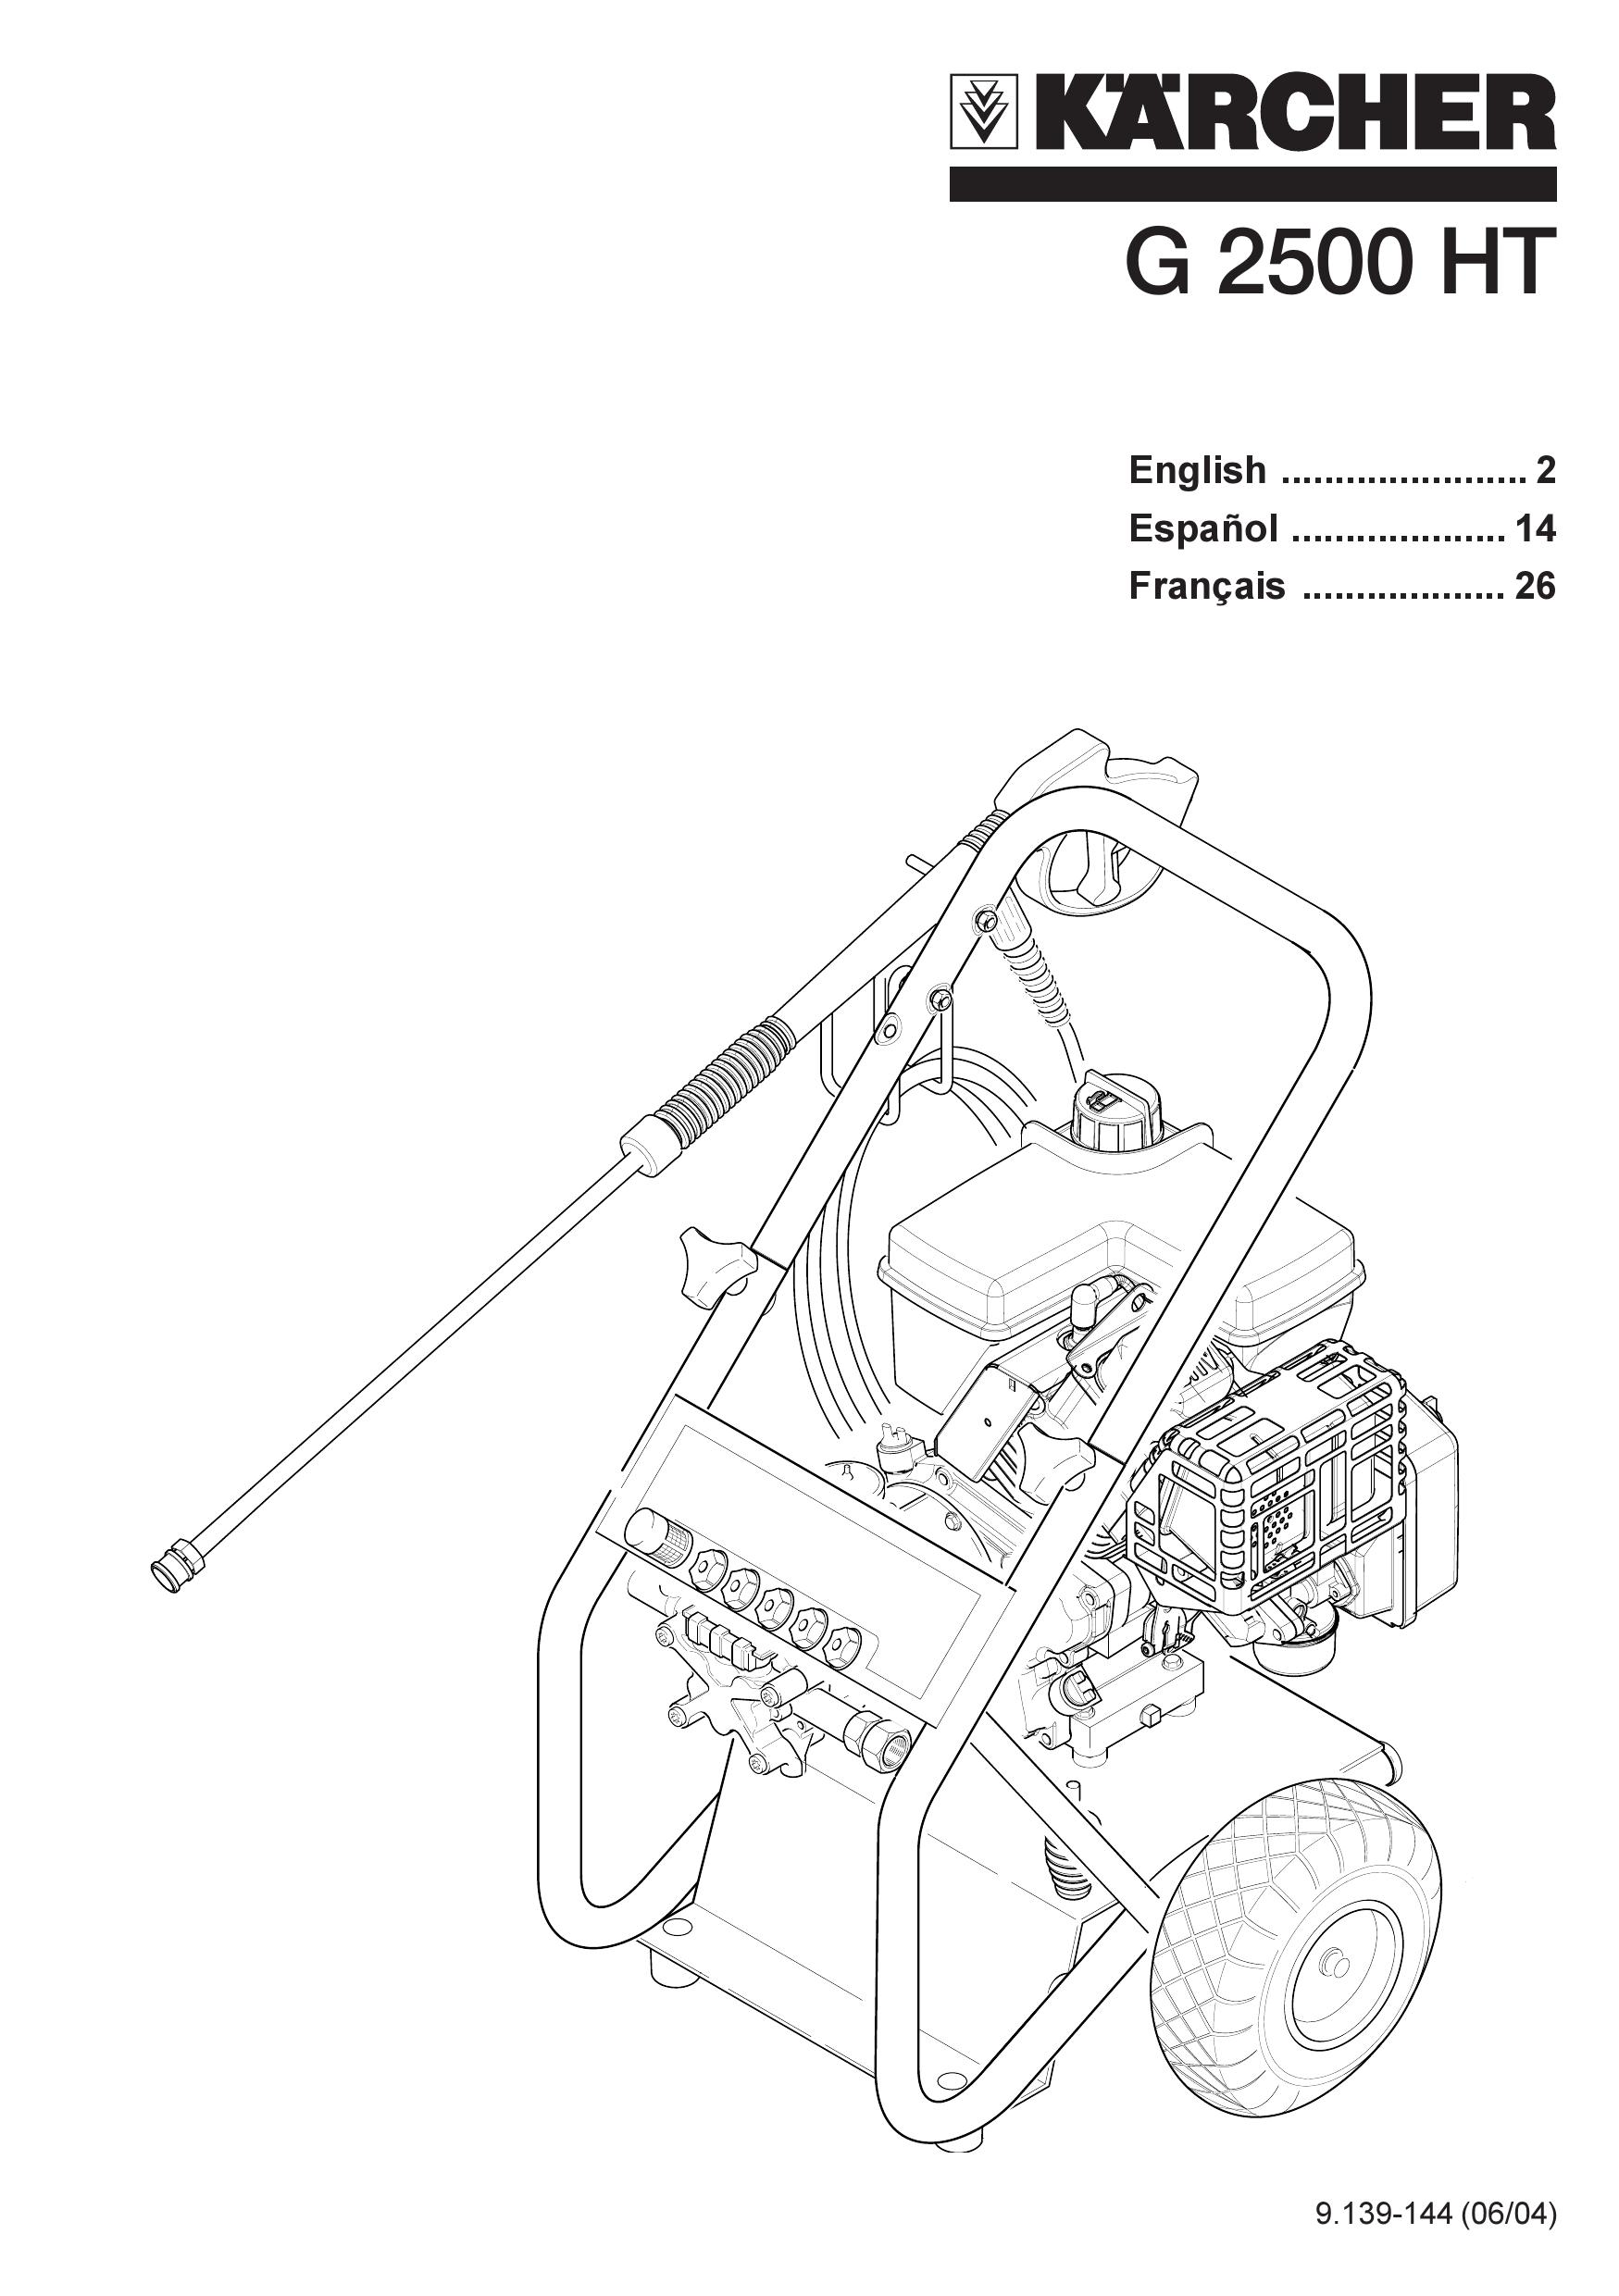 Karcher G 2500 HT Pressure Washer User Manual